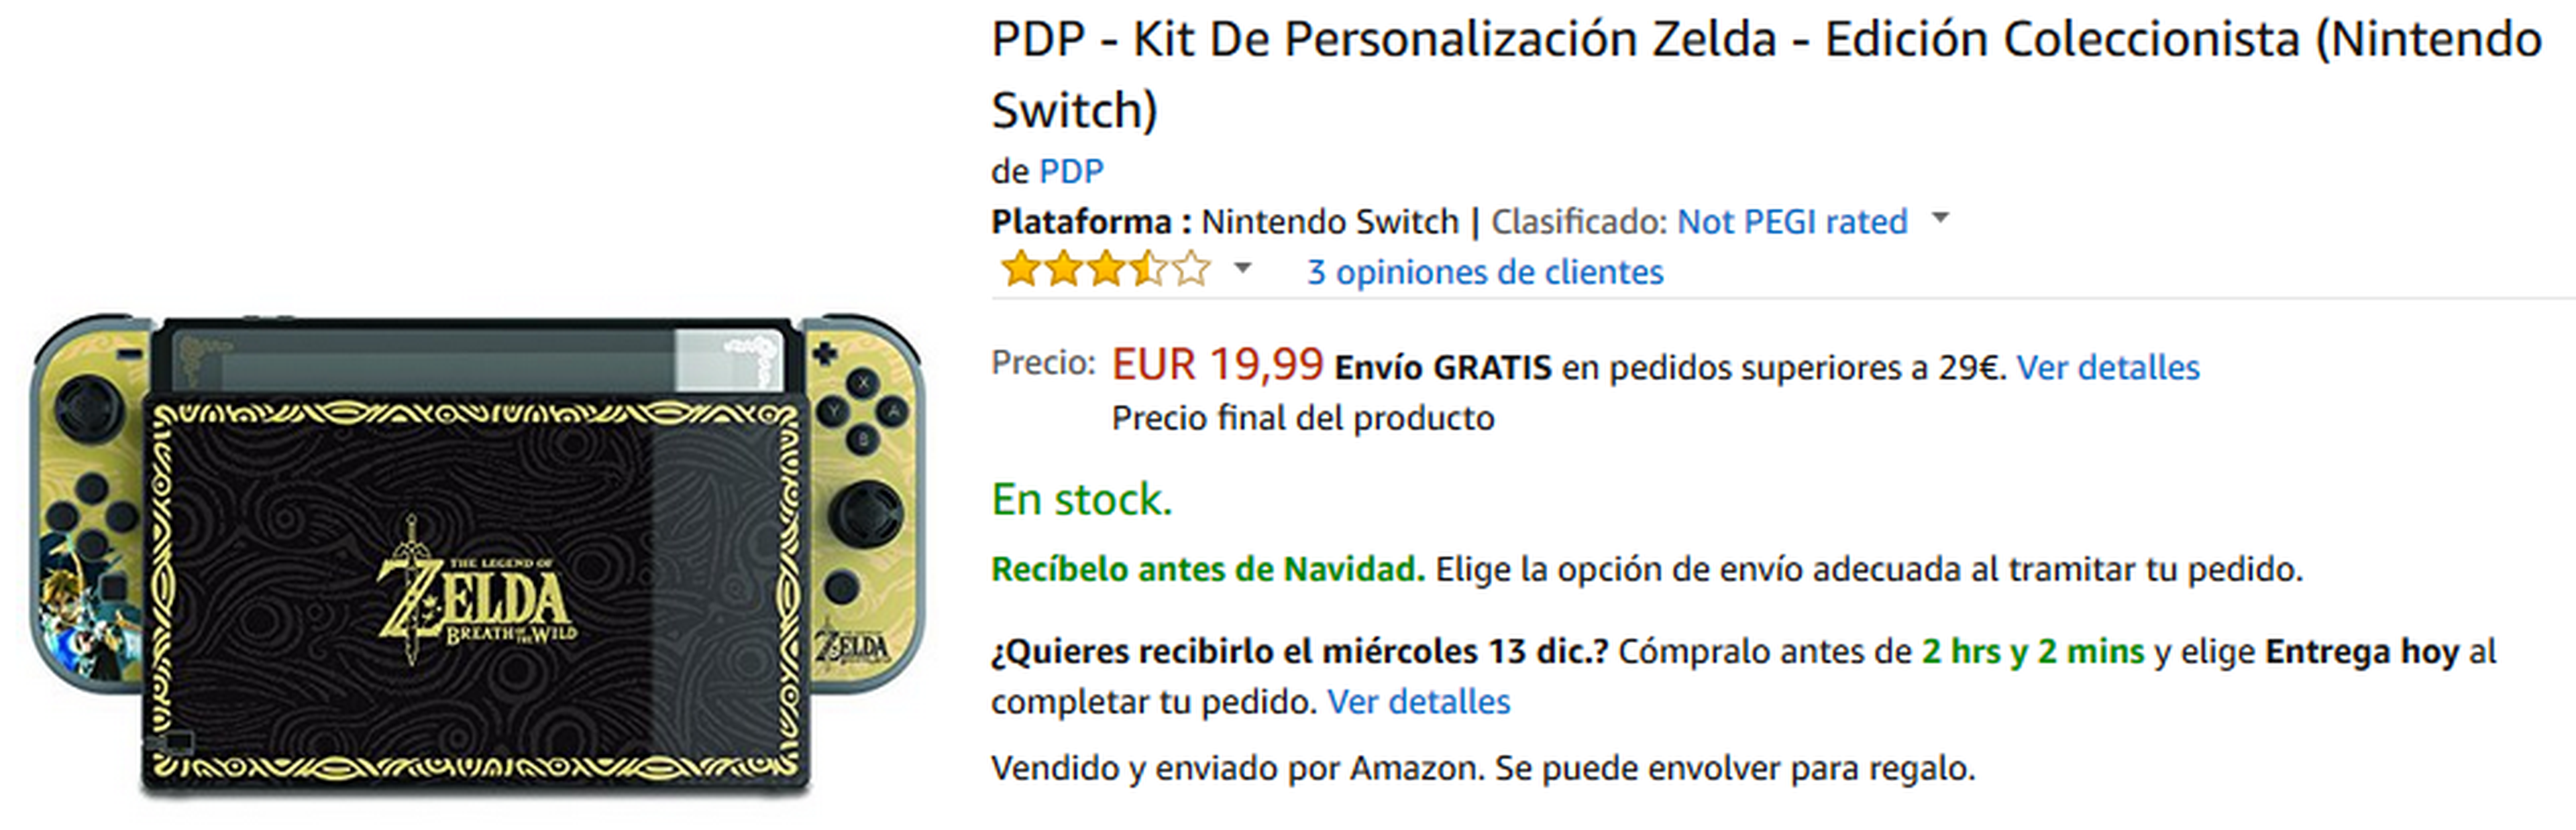 Kit de Personalización Zelda para Nintendo Switch